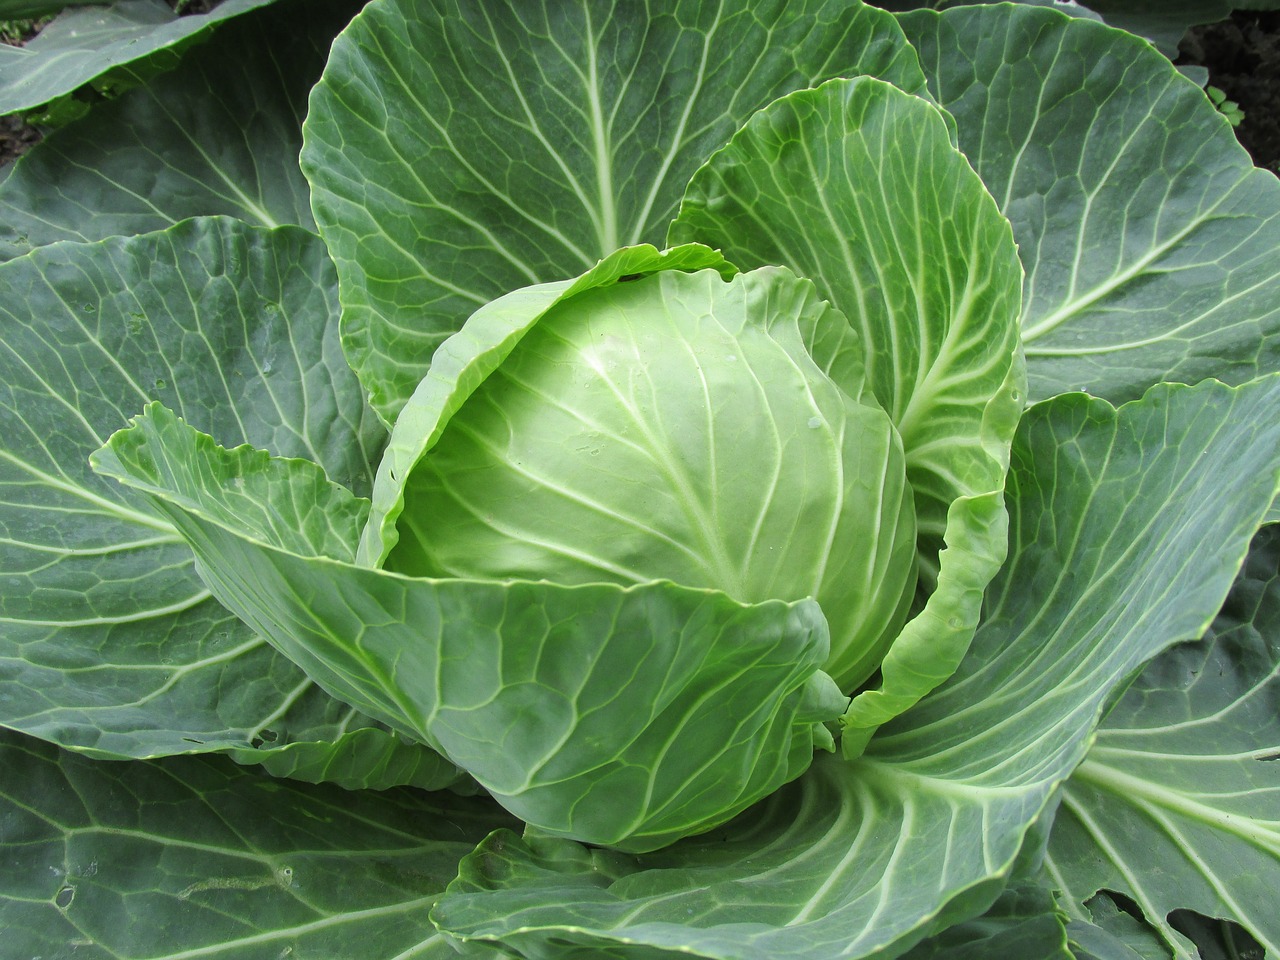 Cabbage, the main ingredient in sauerkraut